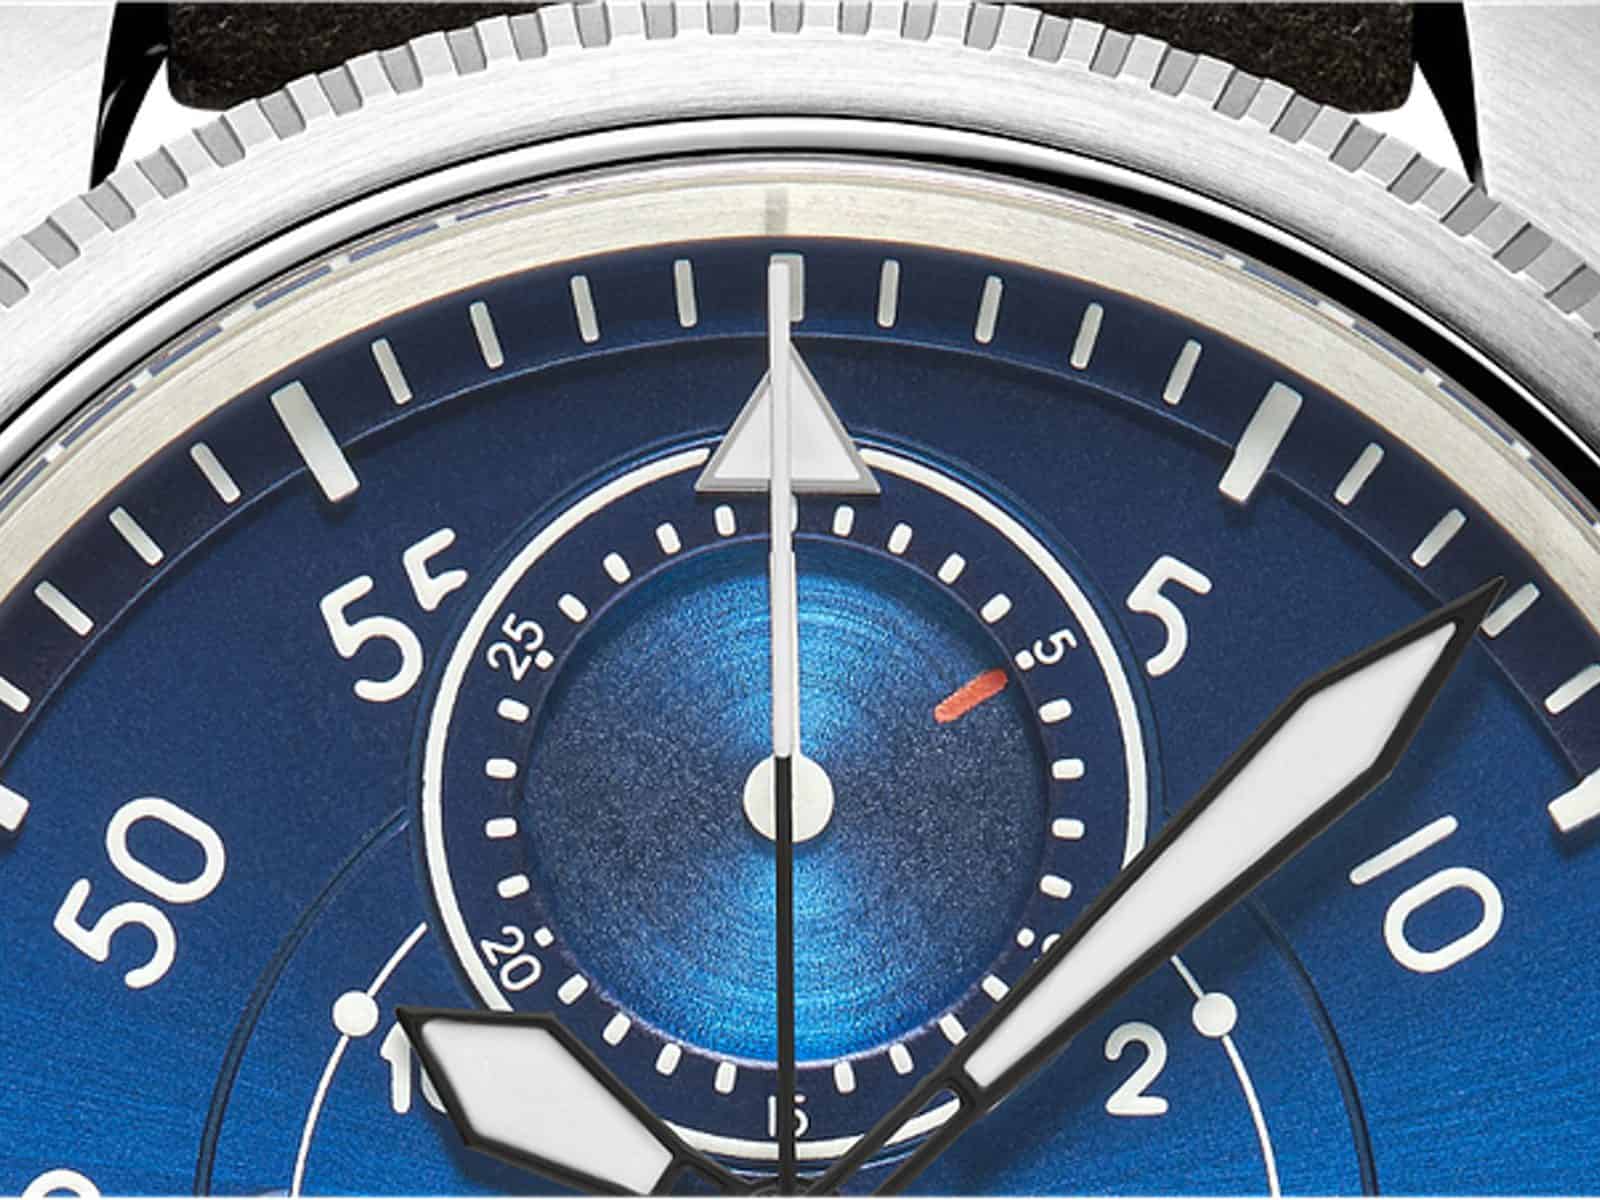 Watch Angels Design Type B-Uhr Chronograph -Detail Zähler